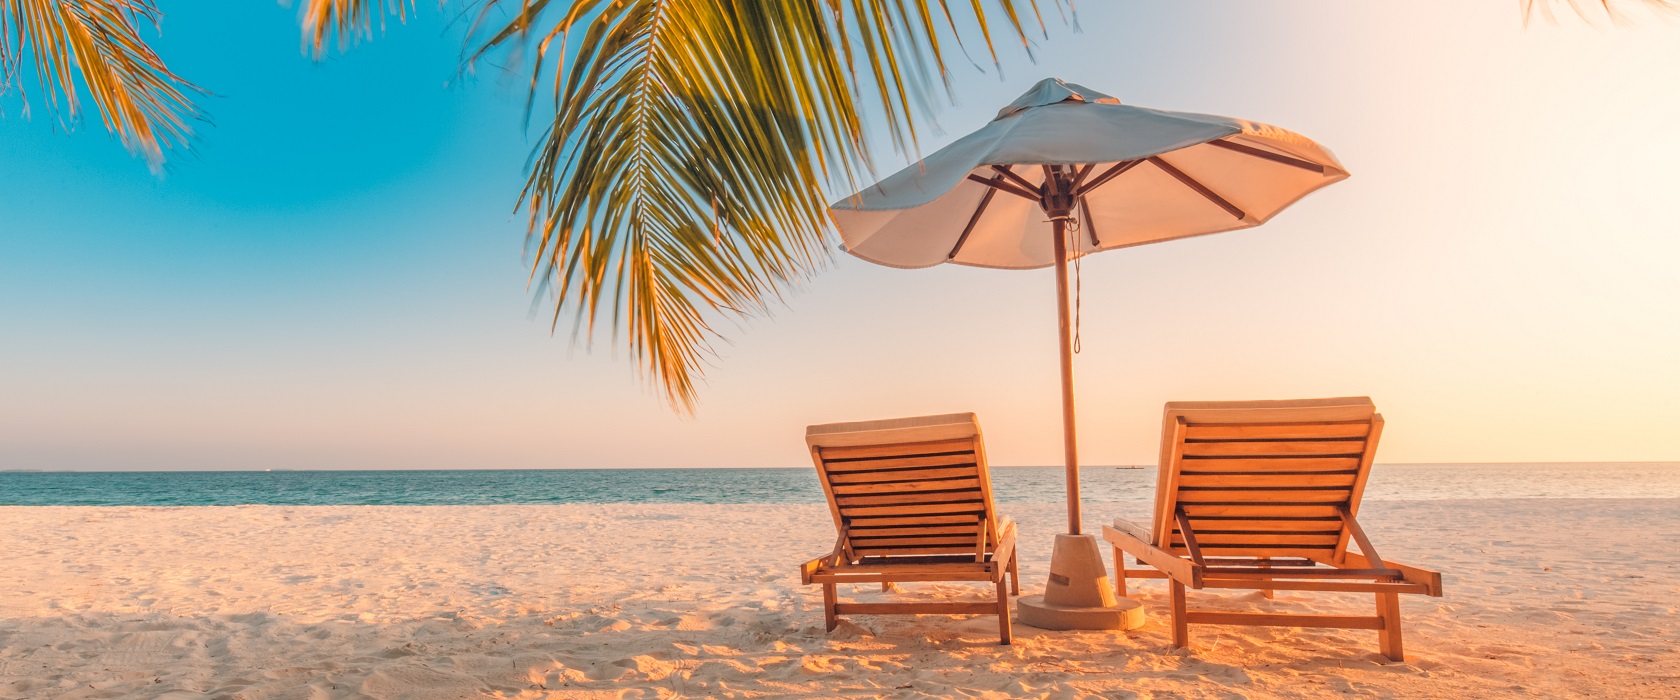 Zwei hölzerne Liegestühle mit einem Sonnenschirm zwischen ihnen, am Strand. Hinter ihnen erstreckt sich türkisblaues Wasser und neben ihnen lugt eine Palme ins Bild. 